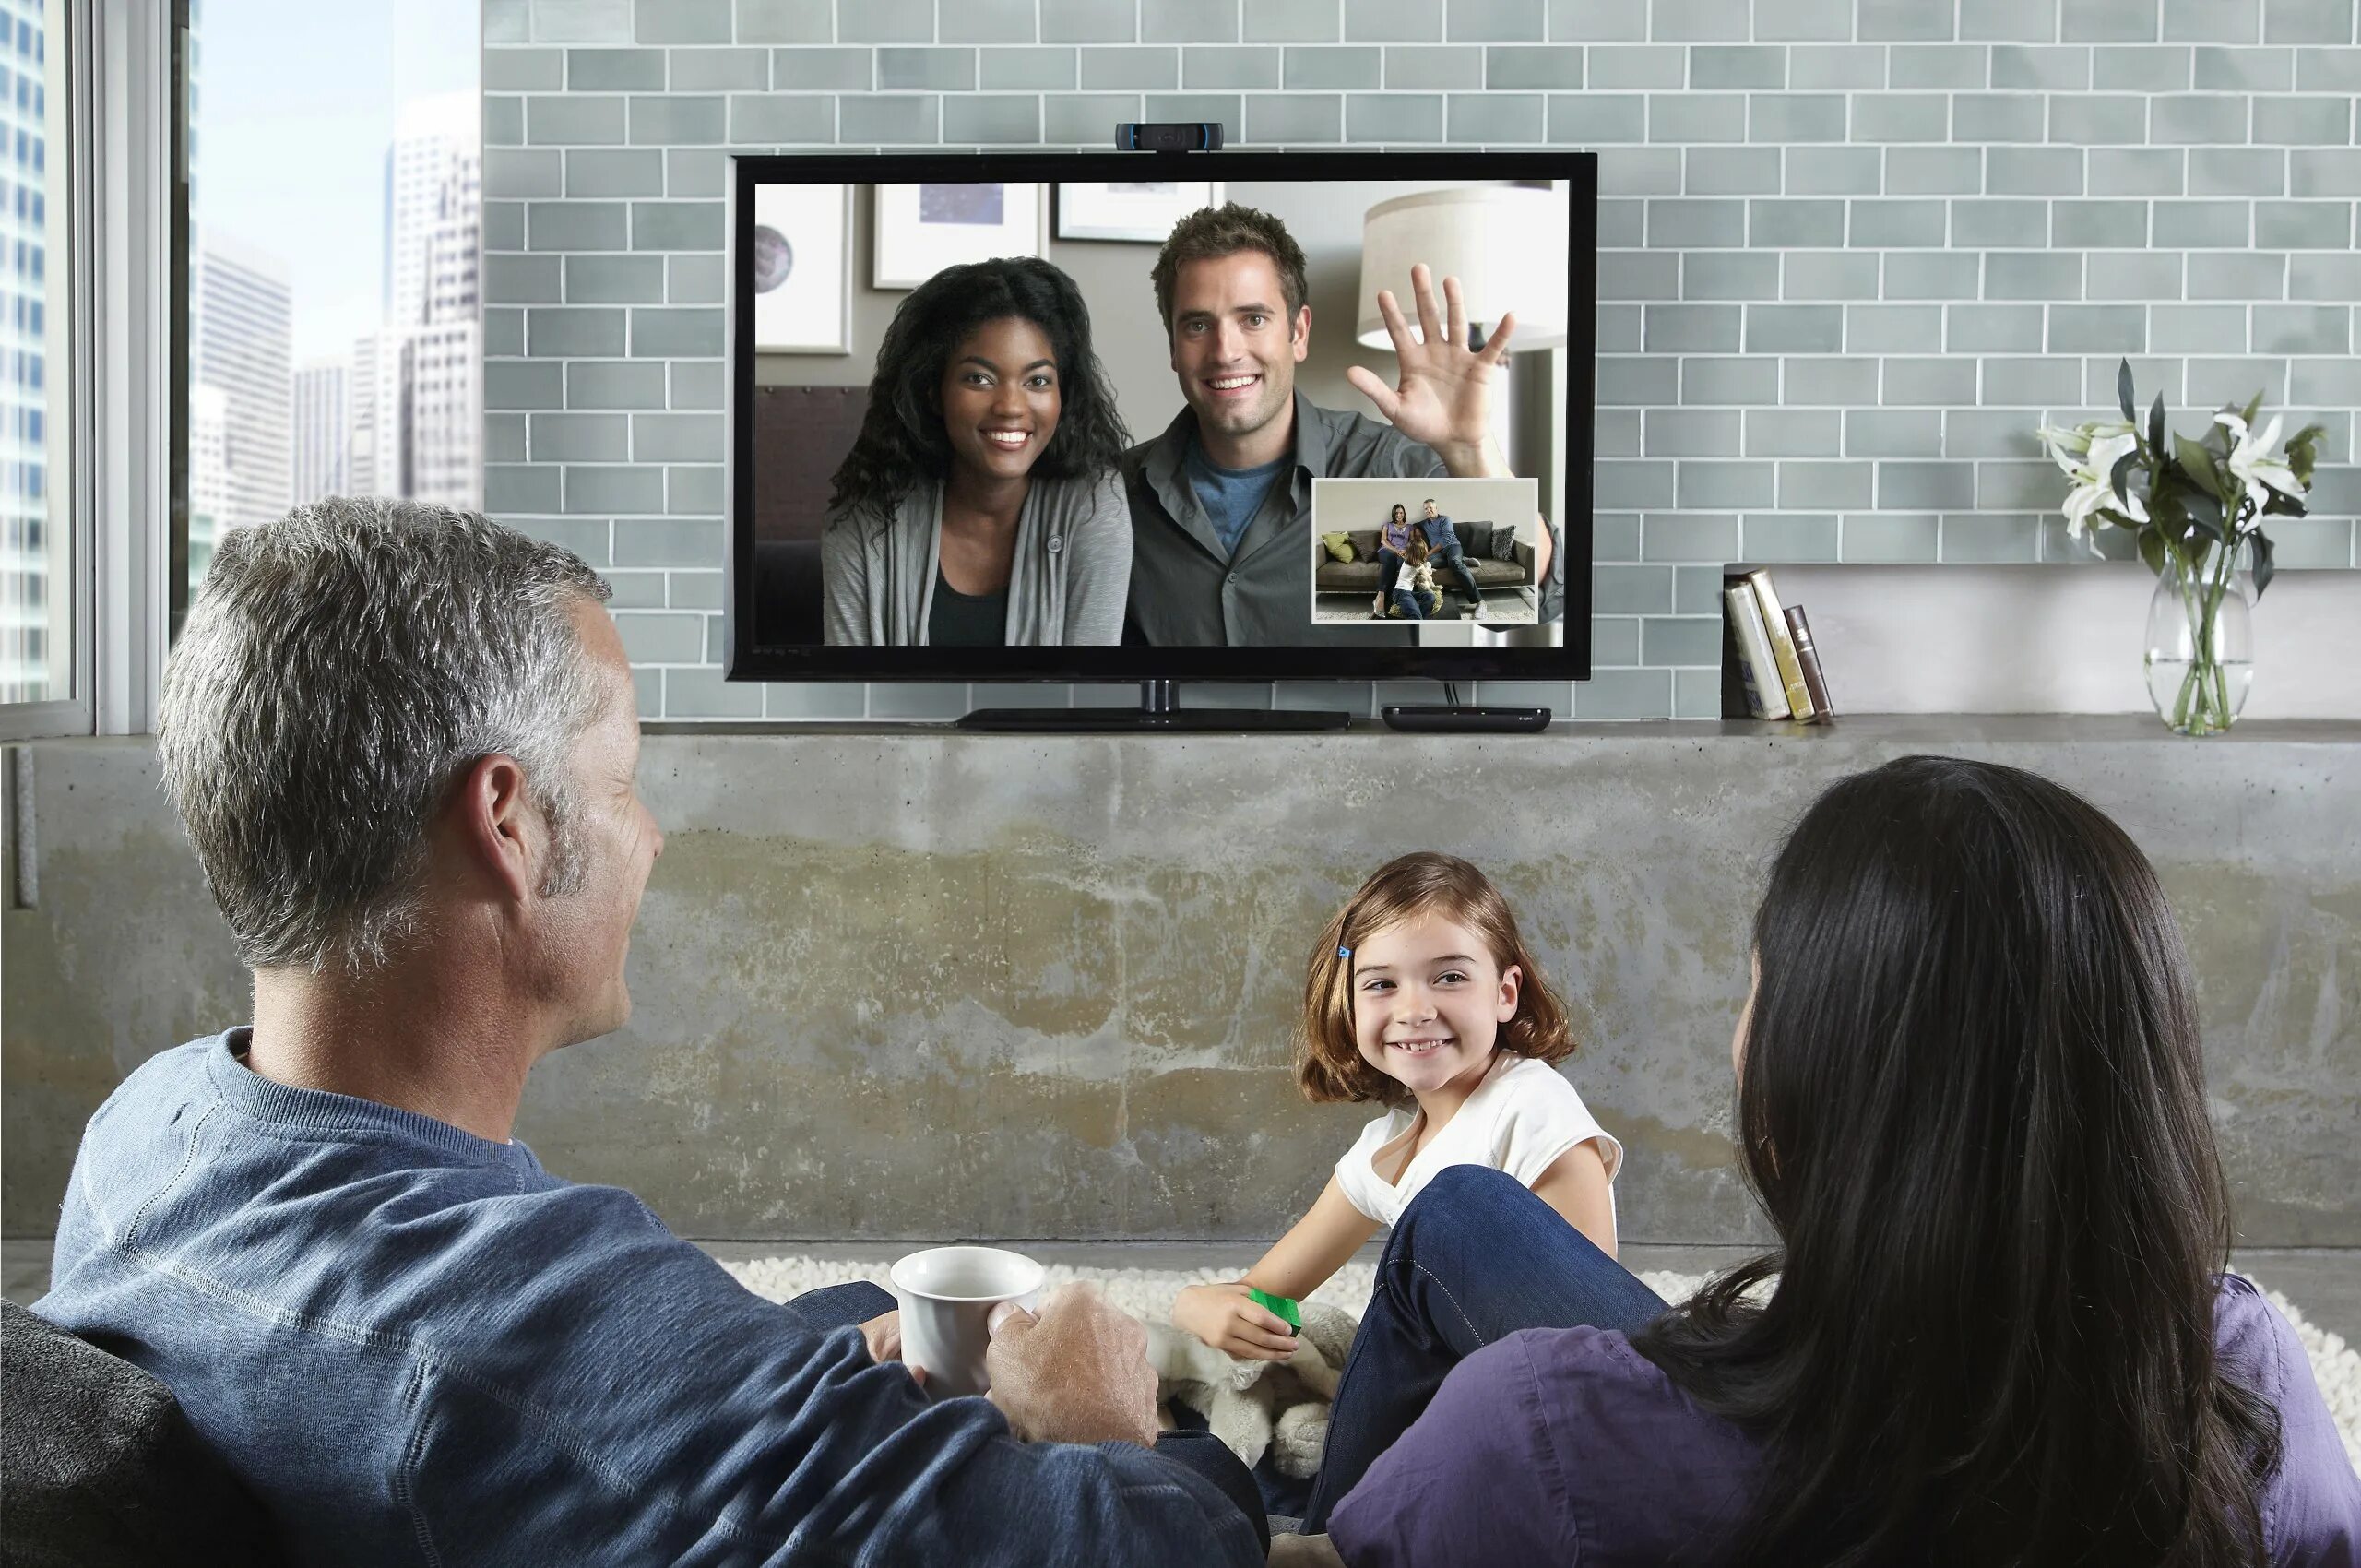 Семья смотрит тв. Семья у телевизора. Человек телевизор. Телевидение для всей семьи.